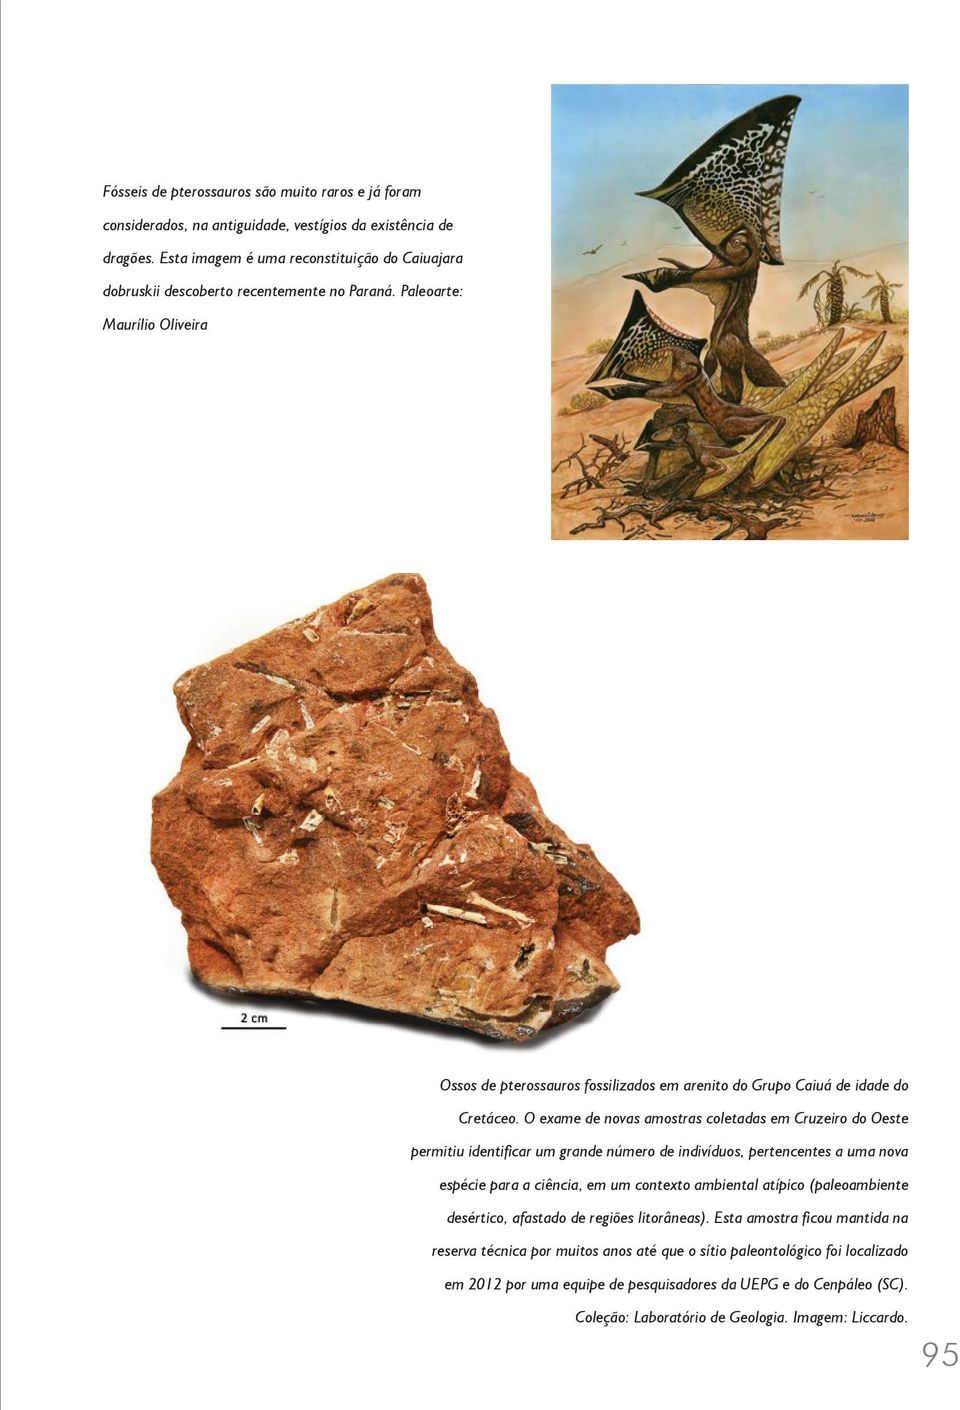 Paleoarte: Maurílio Oliveira Ossos de pterossauros fossilizados em arenito do Grupo Caiuá de idade do Cretáceo.